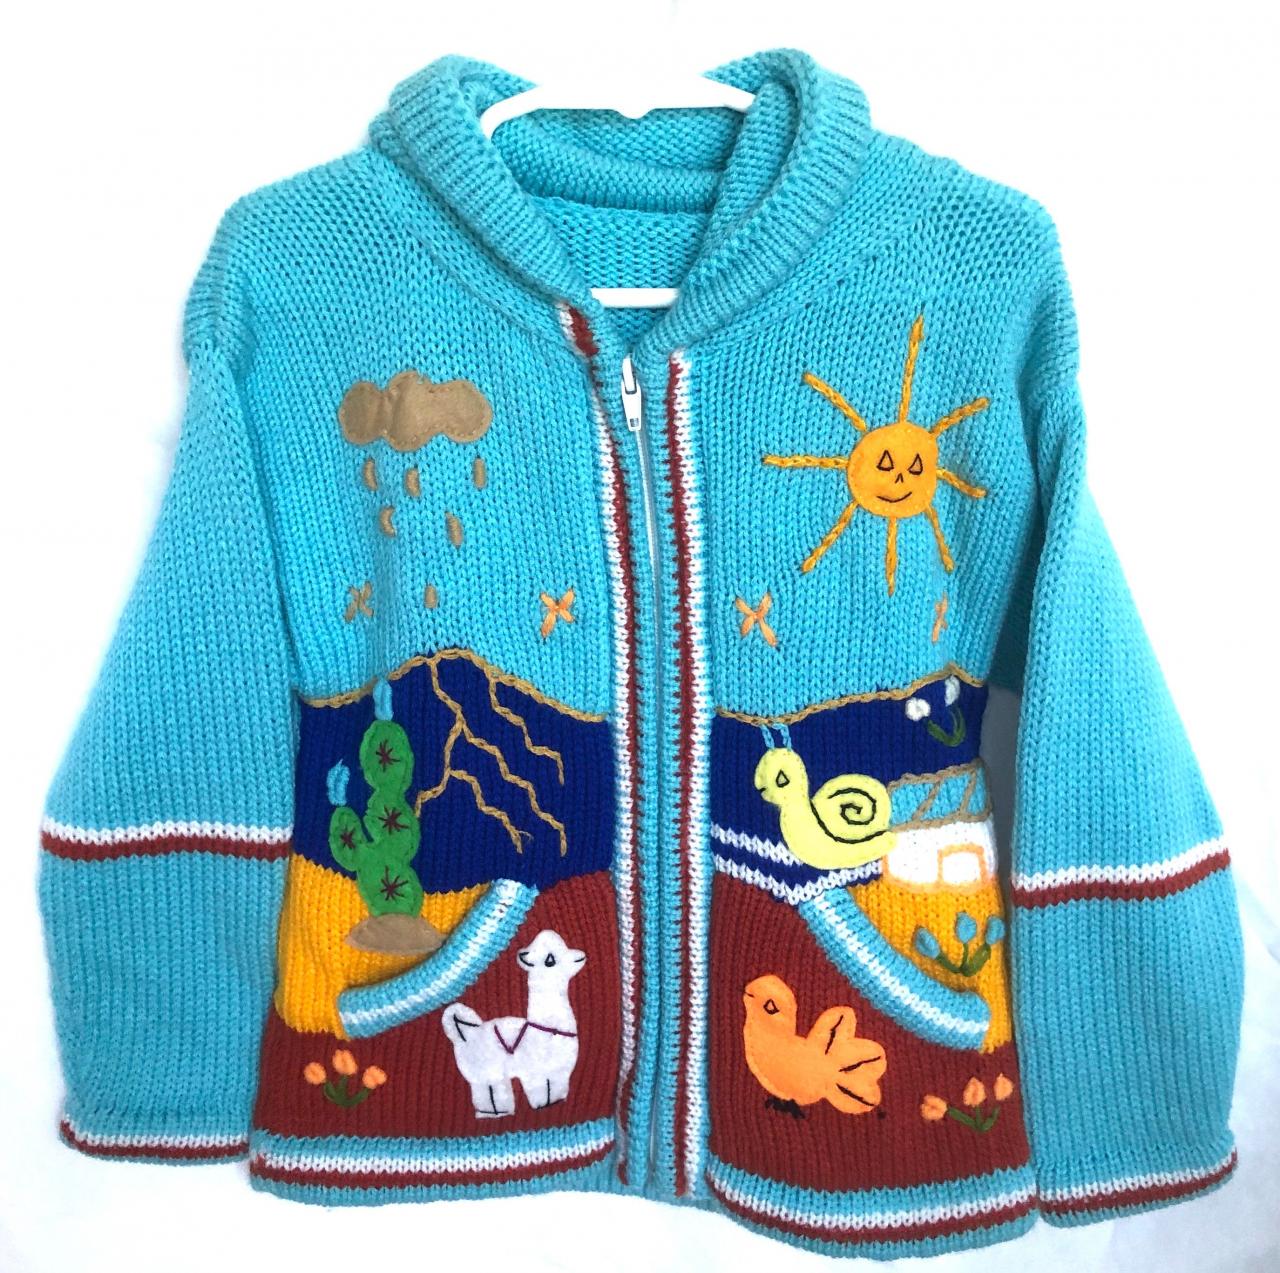 Size 6 Blue Hooded Jacket, Girls Jacket, Winter Jacket, Zipper Jacket, Knitwear Jacket, Kids Jacket, Wool Sheep Jacket, Long Sleeve